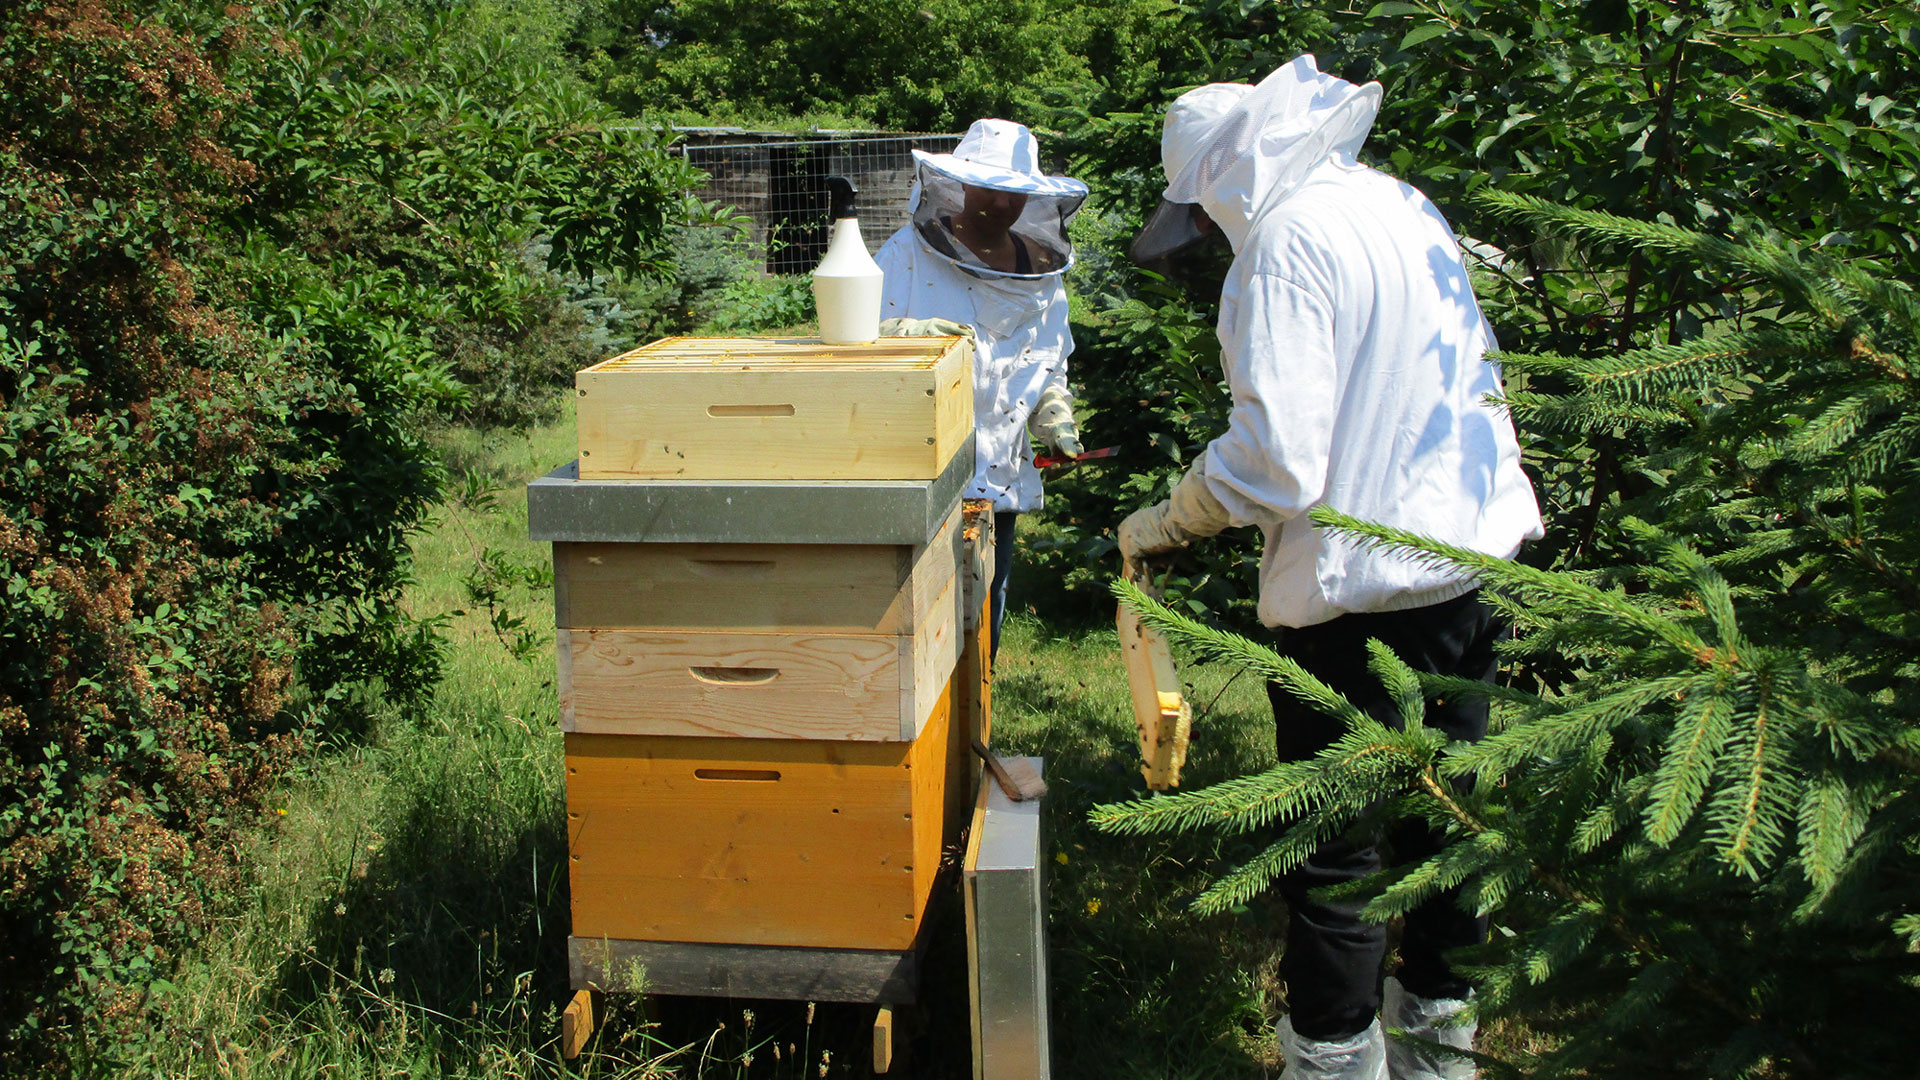 Beekeeping-16x9-2k.jpg